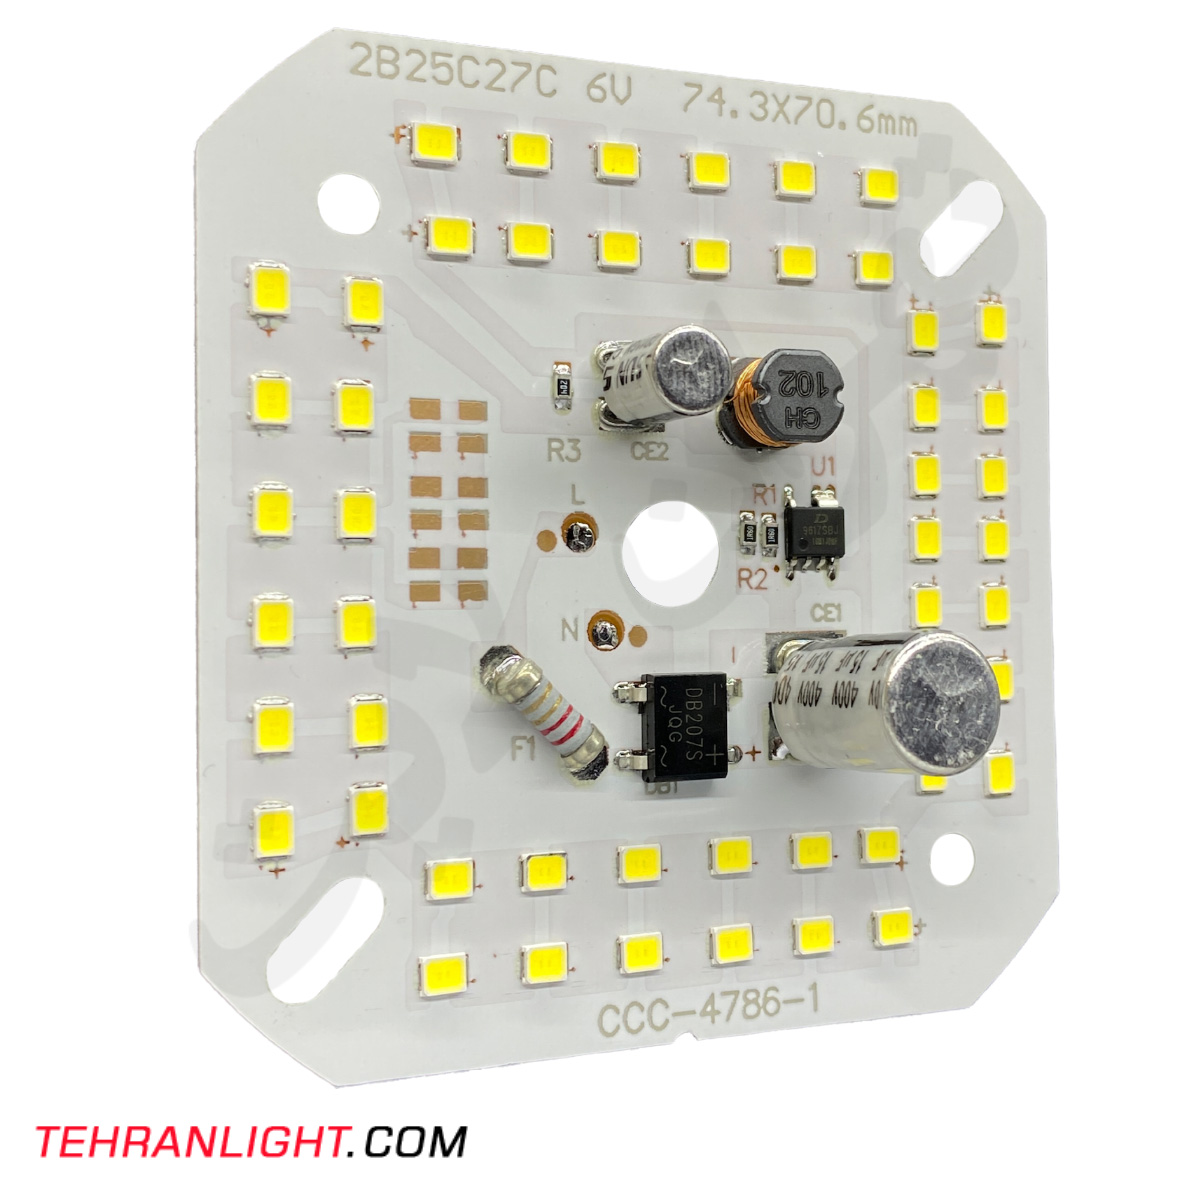 چیپ 50 وات برق مستقیم خازن دار مدل CCC-4786-1 نور مهتابی